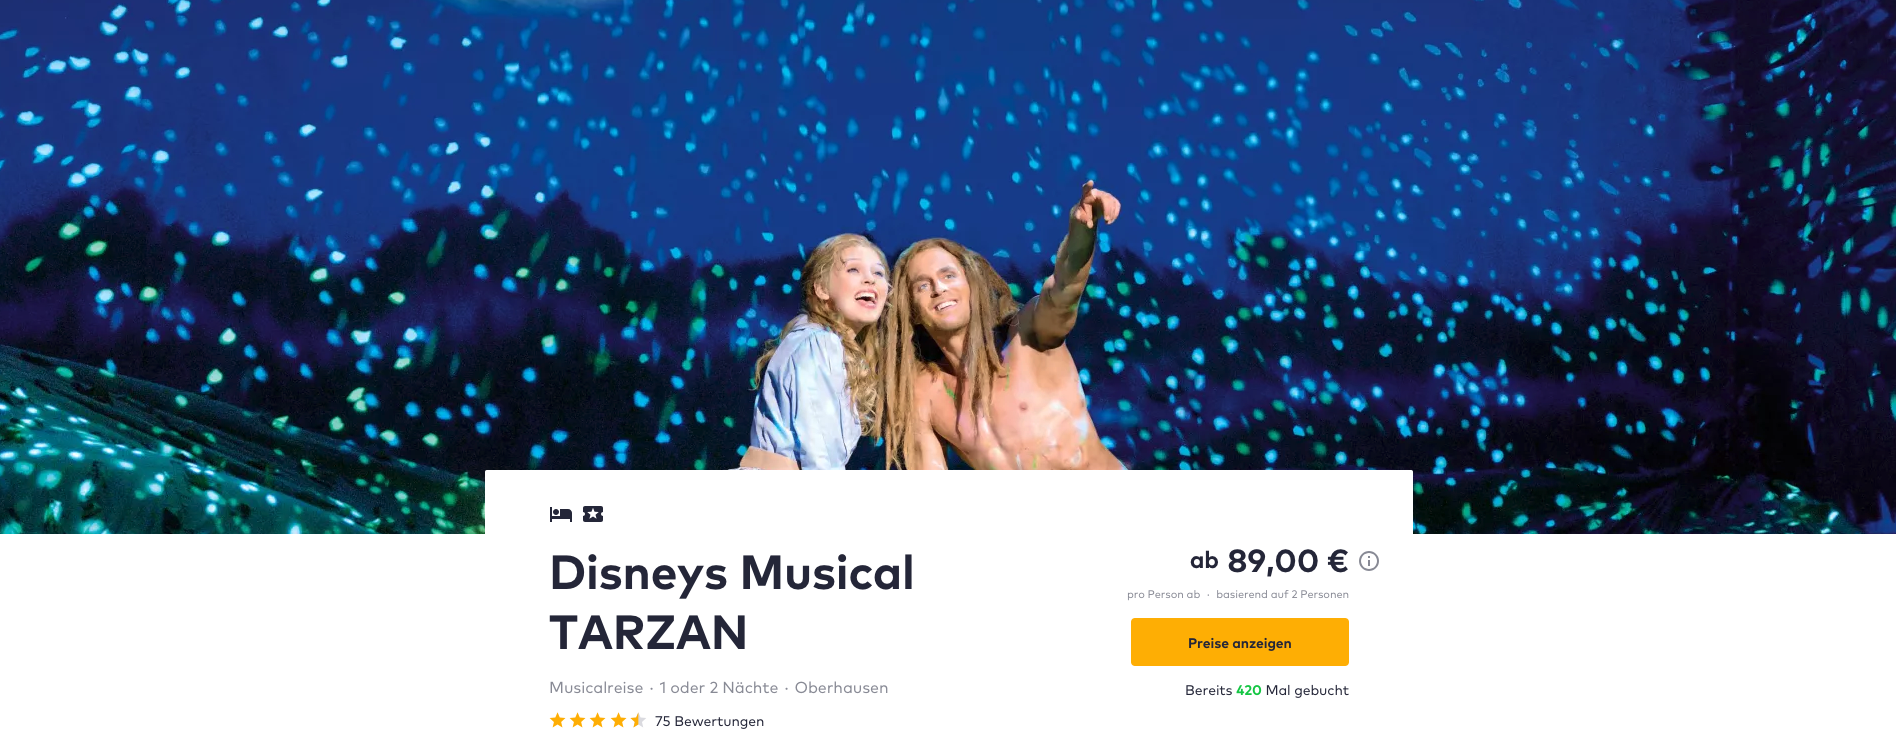 Tarzan Musical 2 Tage in Oberhausen inklusive 4* Hotel, Frühstück und Ticket für 99€